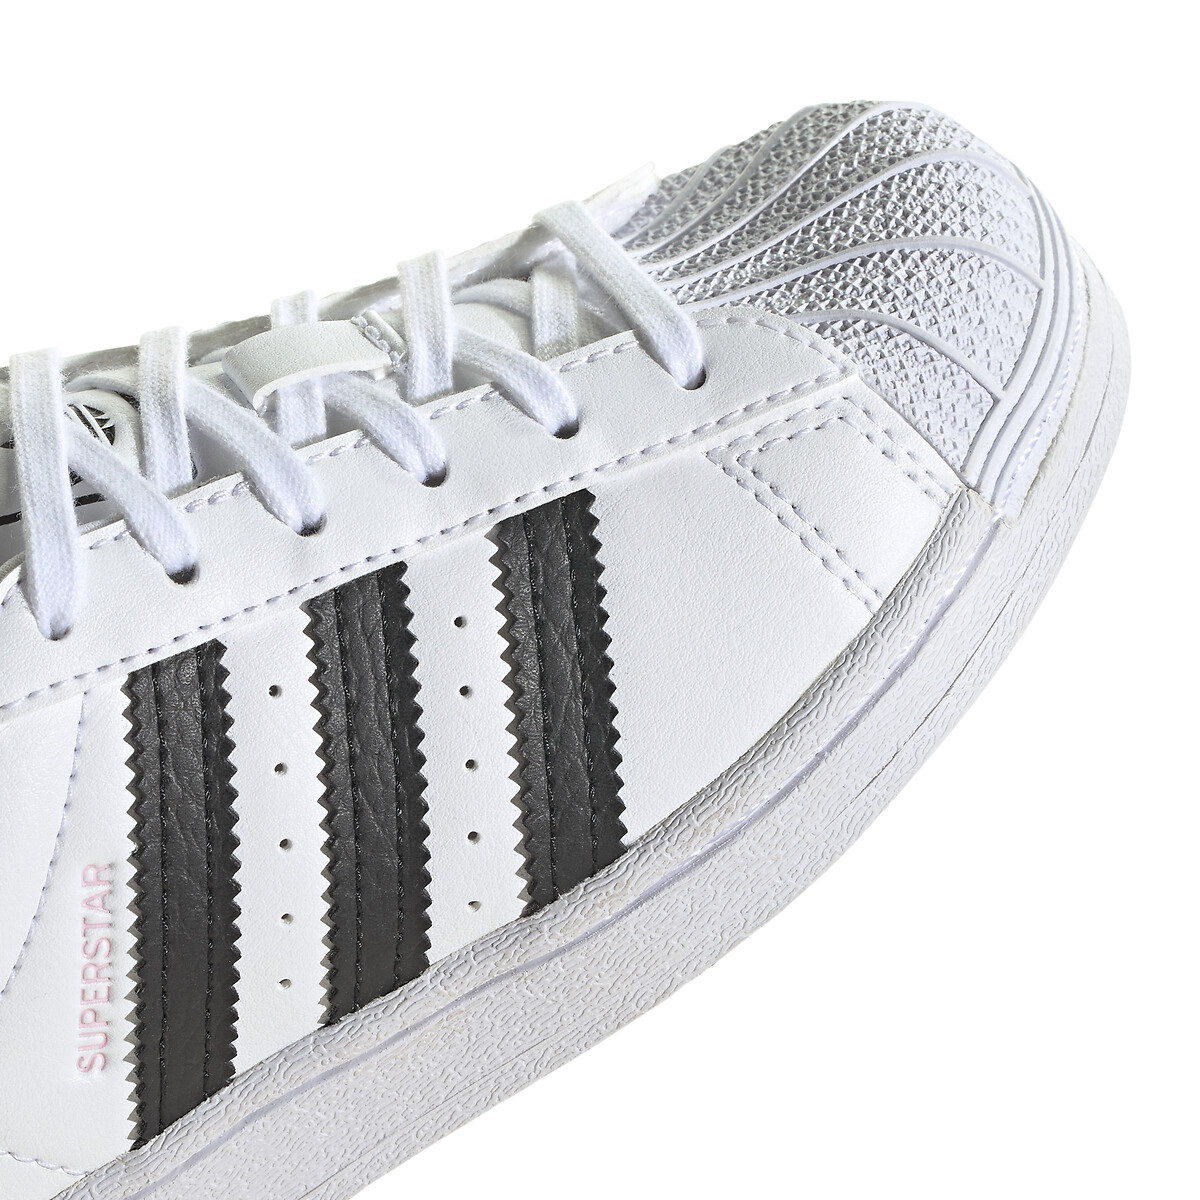 George Bernard natuurlijk kiem Sneakers met veters superstar wit Adidas Originals | La Redoute